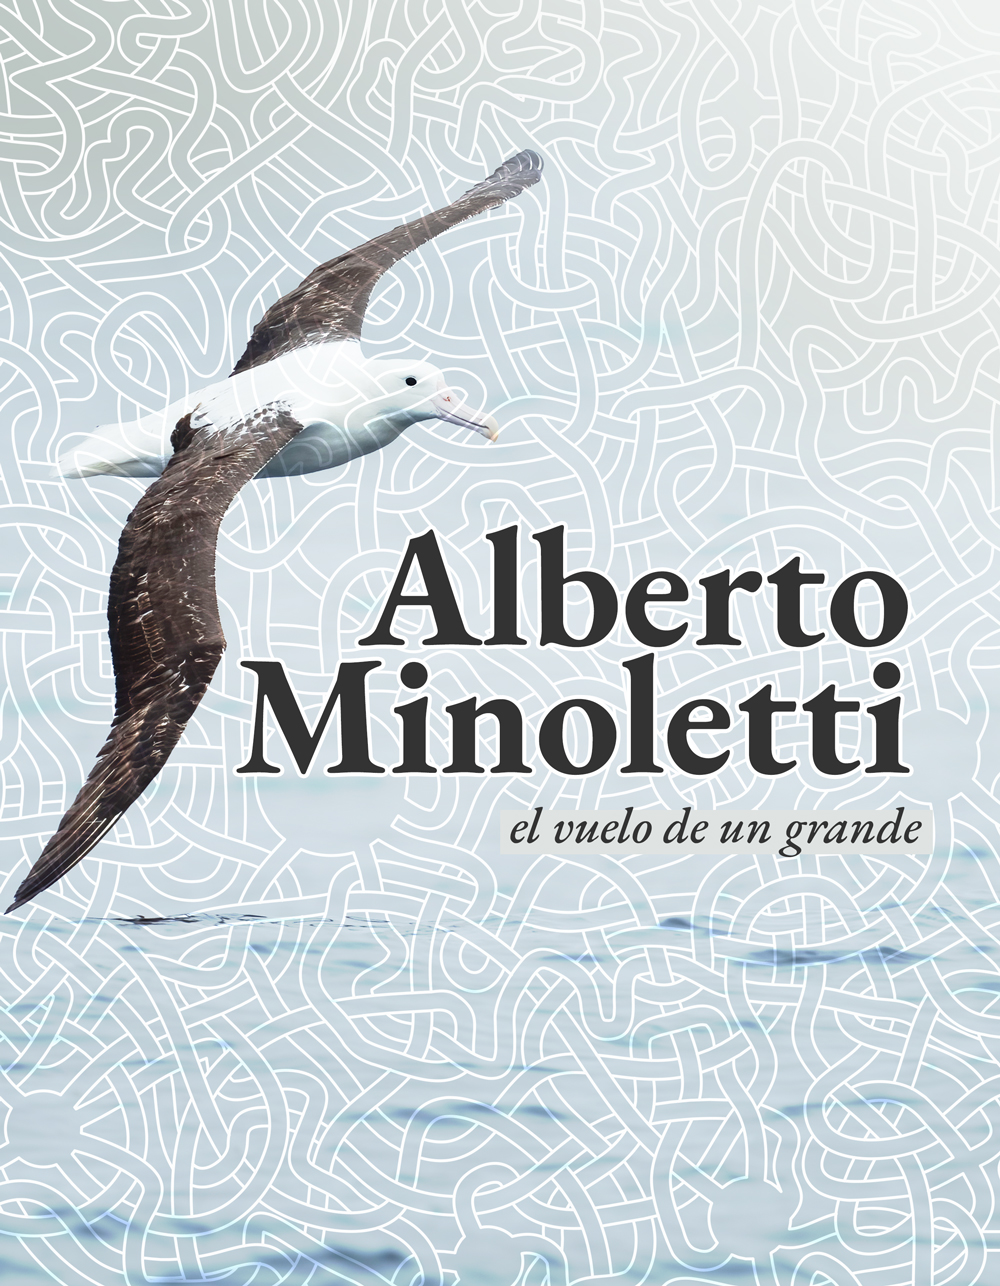 							Ver 2021: Número especial "Alberto Minoletti, el vuelo de un grande"
						